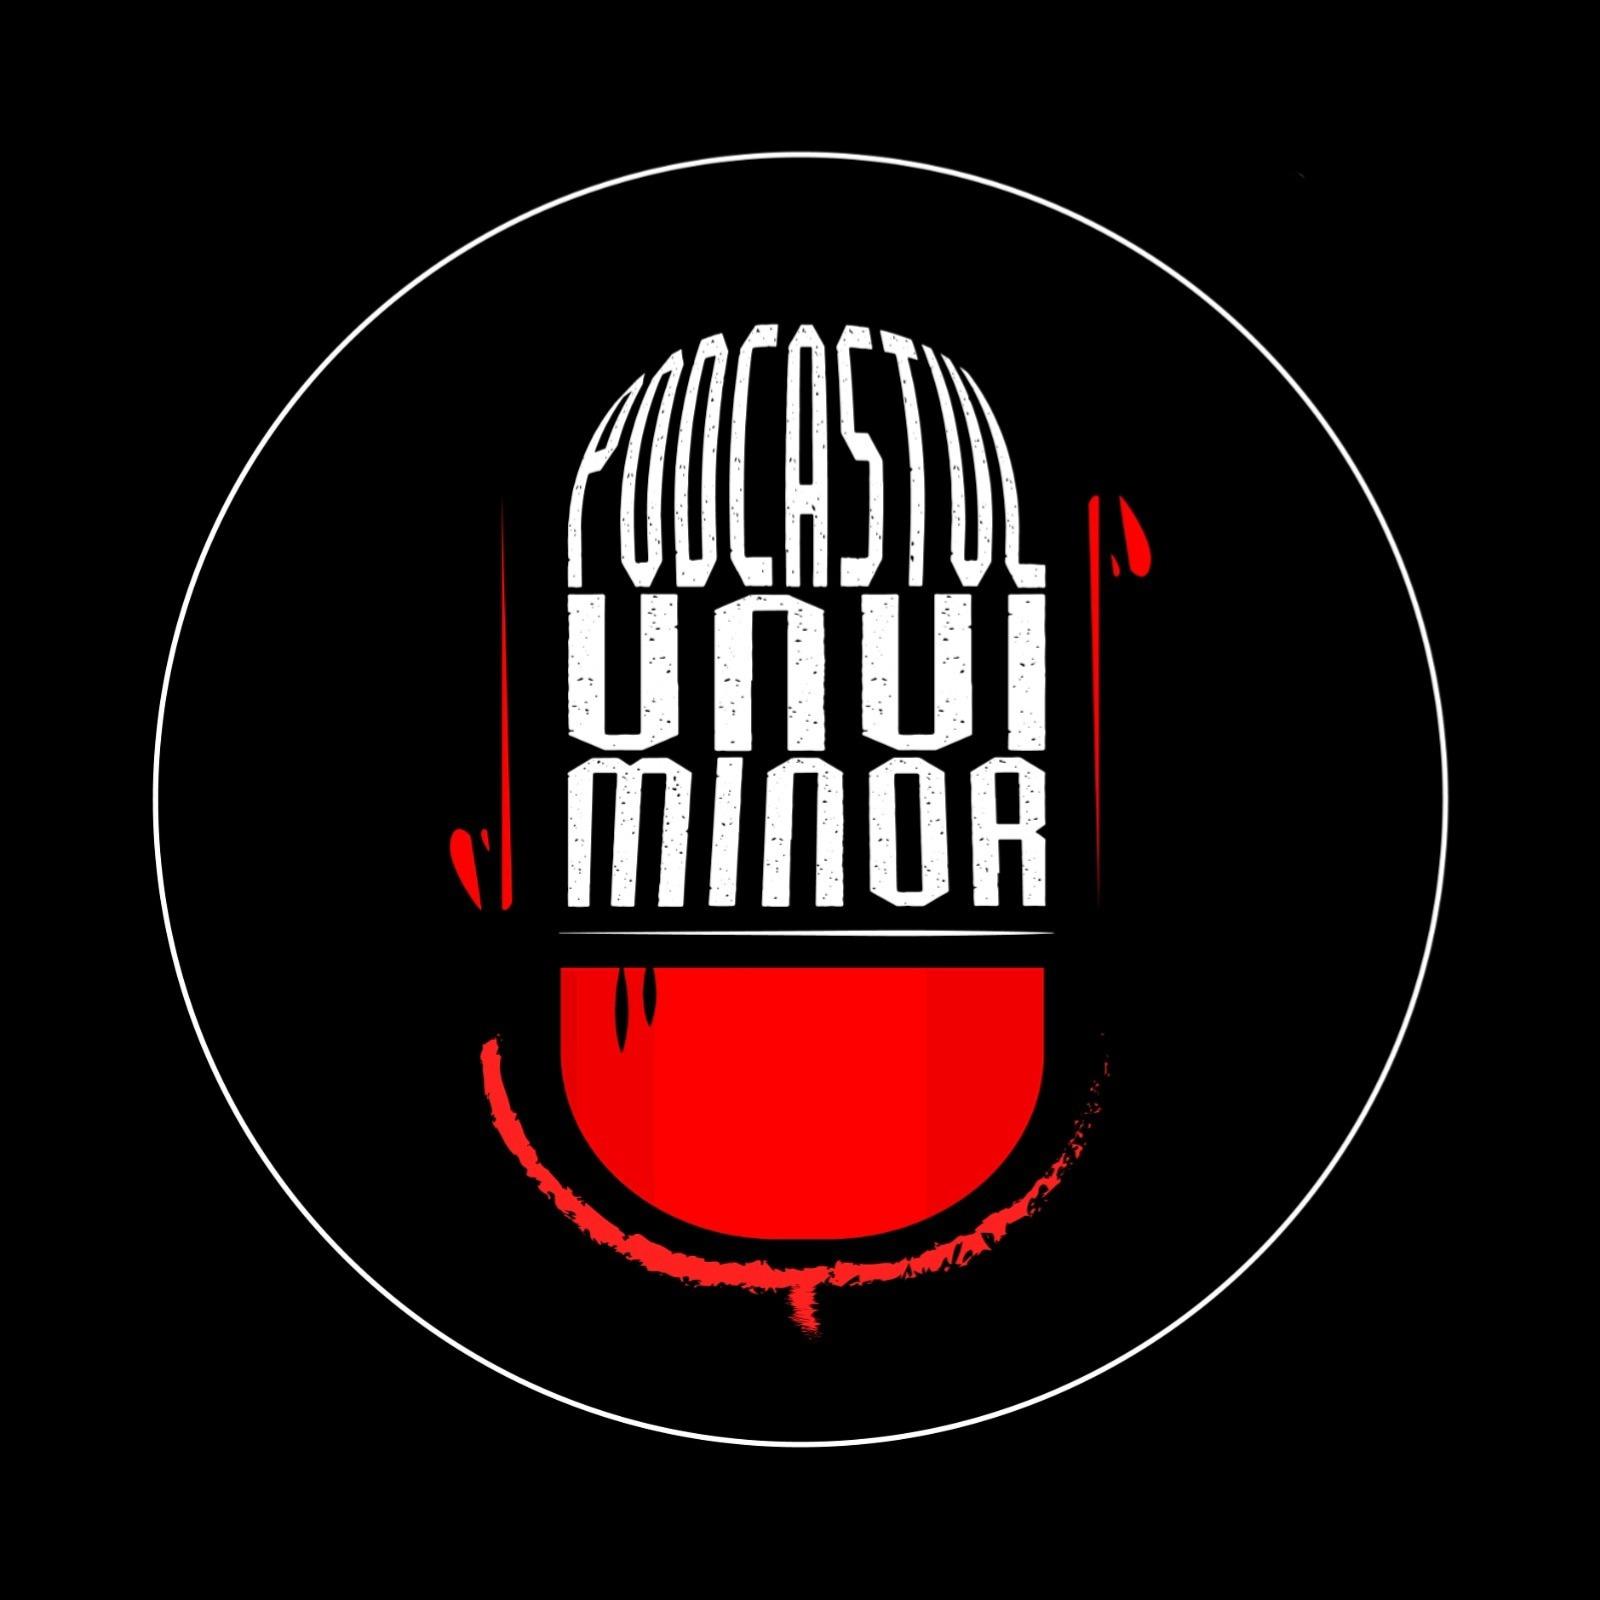 Podcastul unui minor